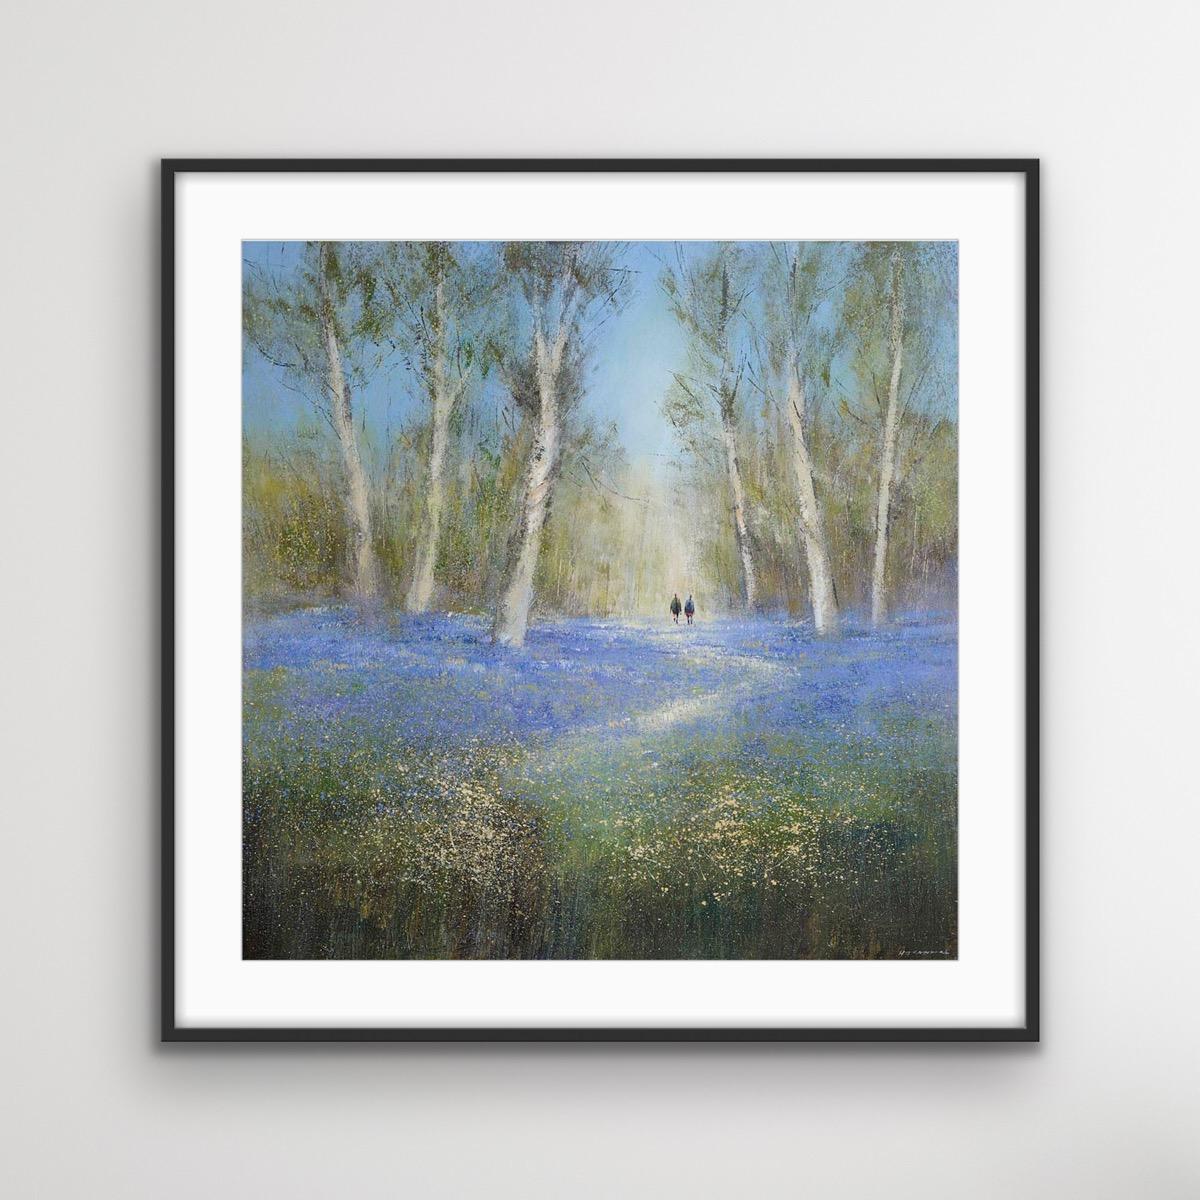 Bluebell Woods Large est une impression sur toile en édition limitée de l'artiste Michael Sanders. Ces superbes tirages sont réalisés à l'aide d'encres d'art de qualité archive et d'une toile recouverte de trois couches de vernis UV pour protéger